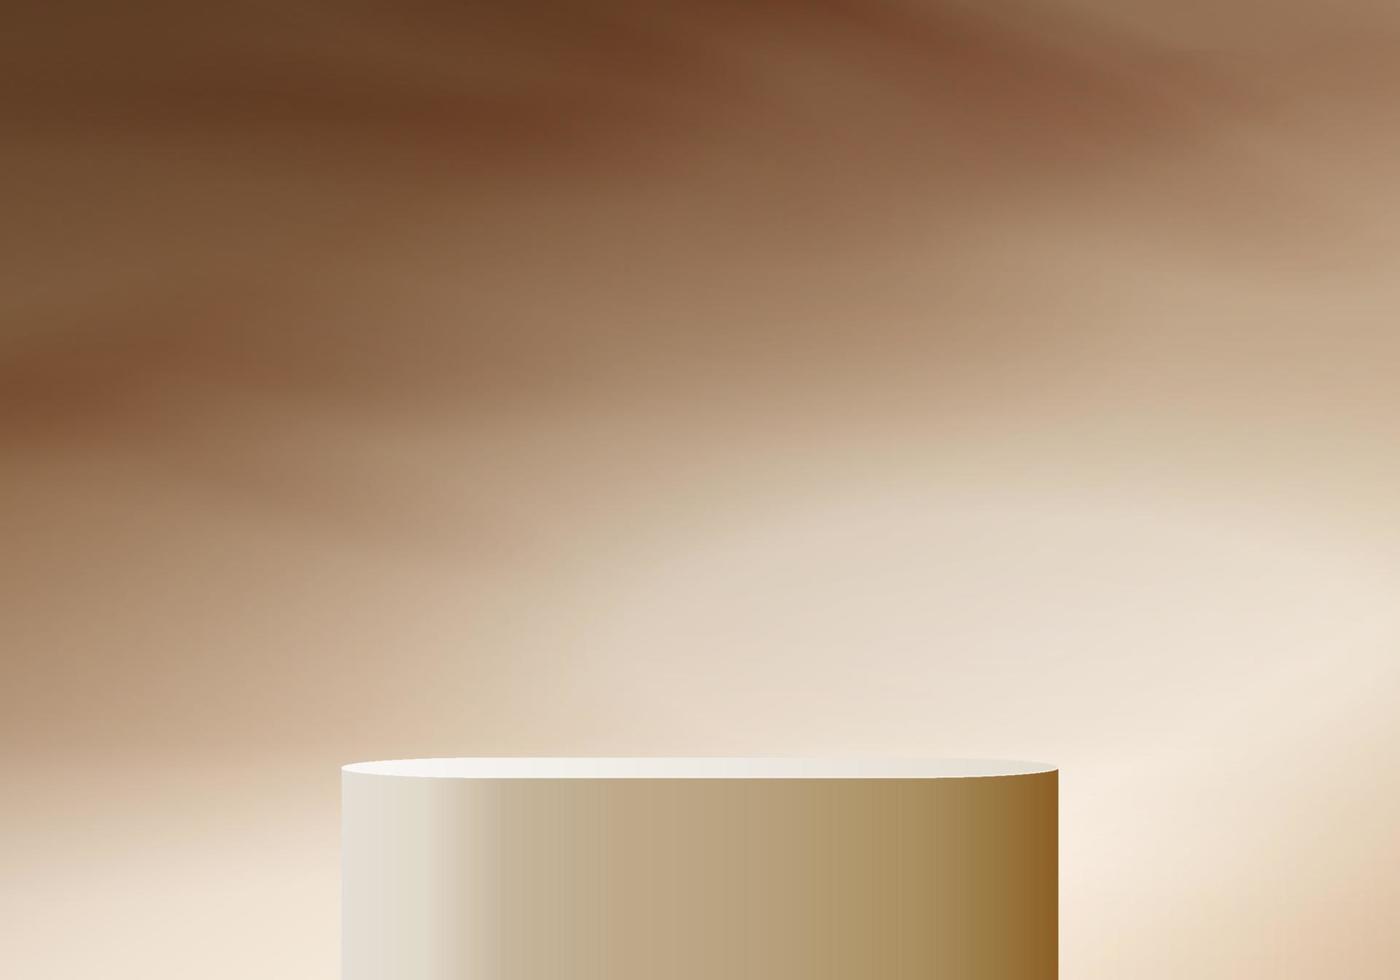 cilindro escena mínima abstracta con plataforma geométrica. Representación 3d del vector del fondo del verano con el podio. Stand para mostrar productos cosméticos. escaparate de escenario en pedestal moderno estudio 3d beige pastel